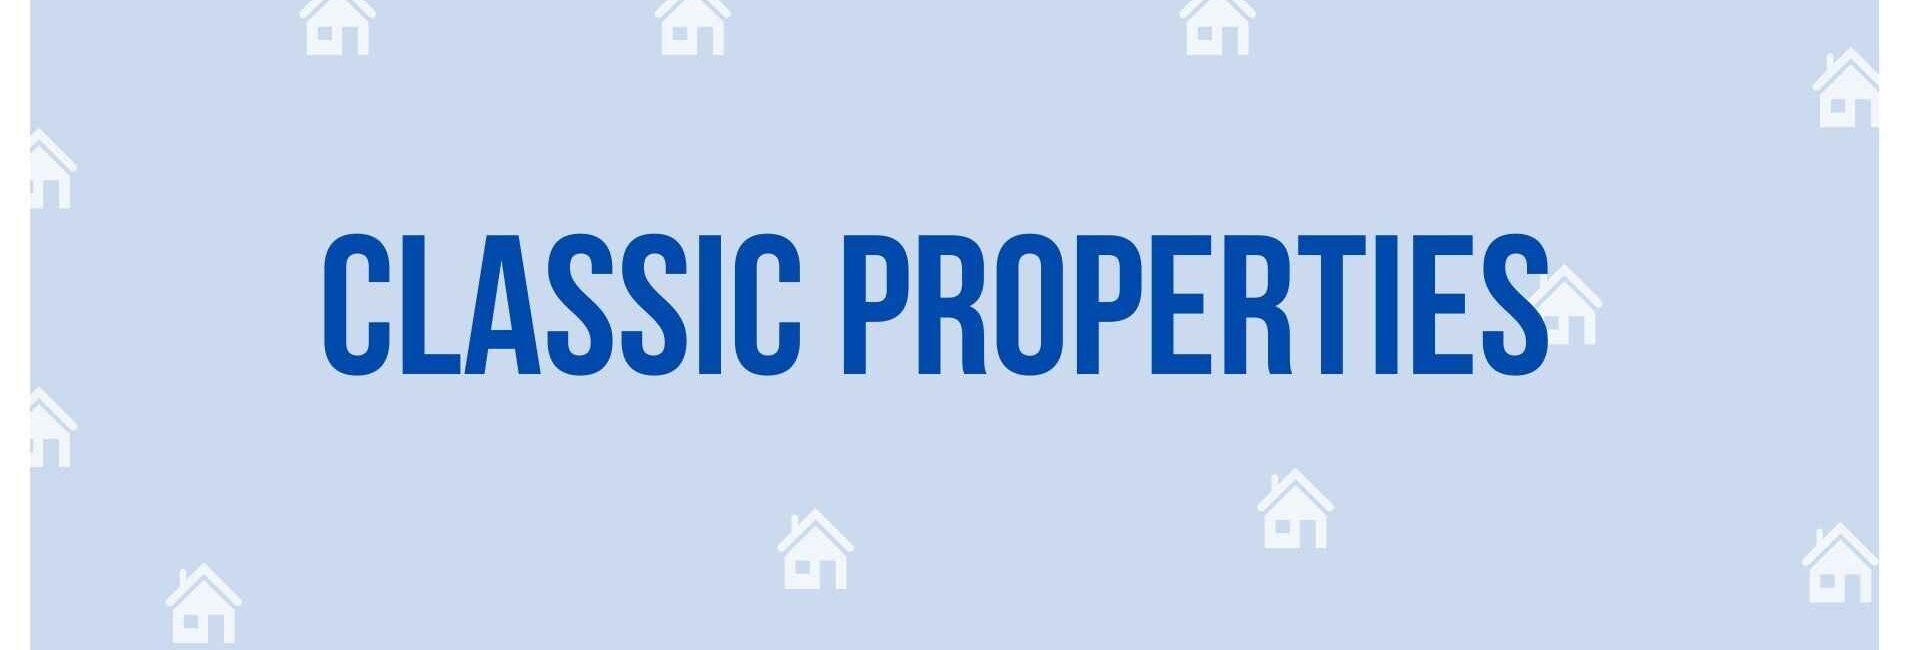 Classic Properties - Property Dealer in Noida